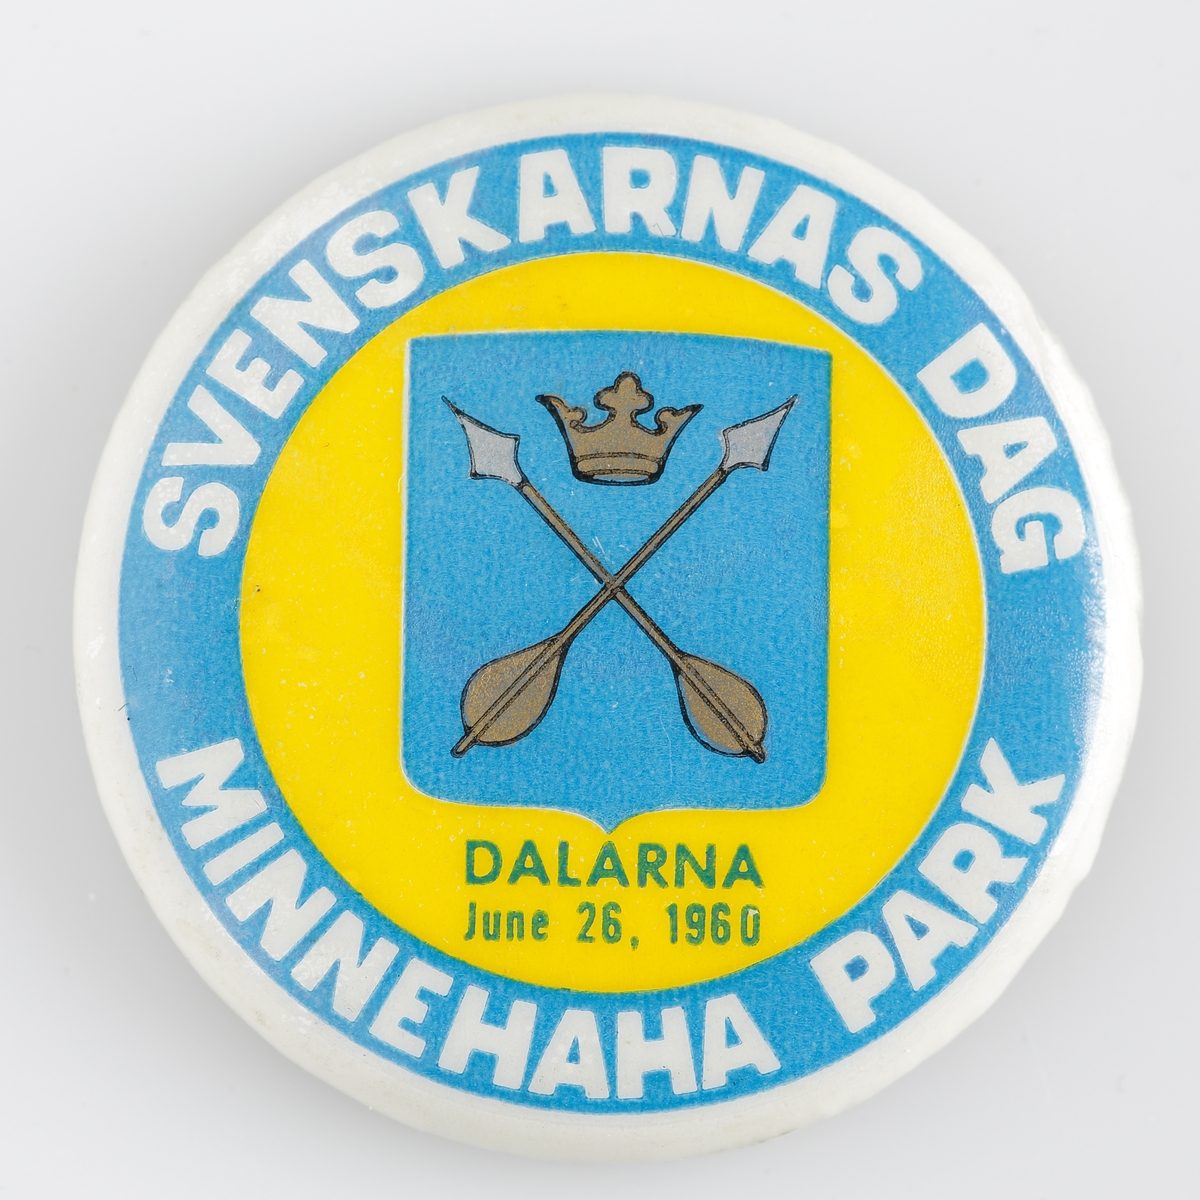 Nålmärke med texten "Svenskarnas dag Minnehaha Park" från 1960 och med Dalarnas länsvapen.